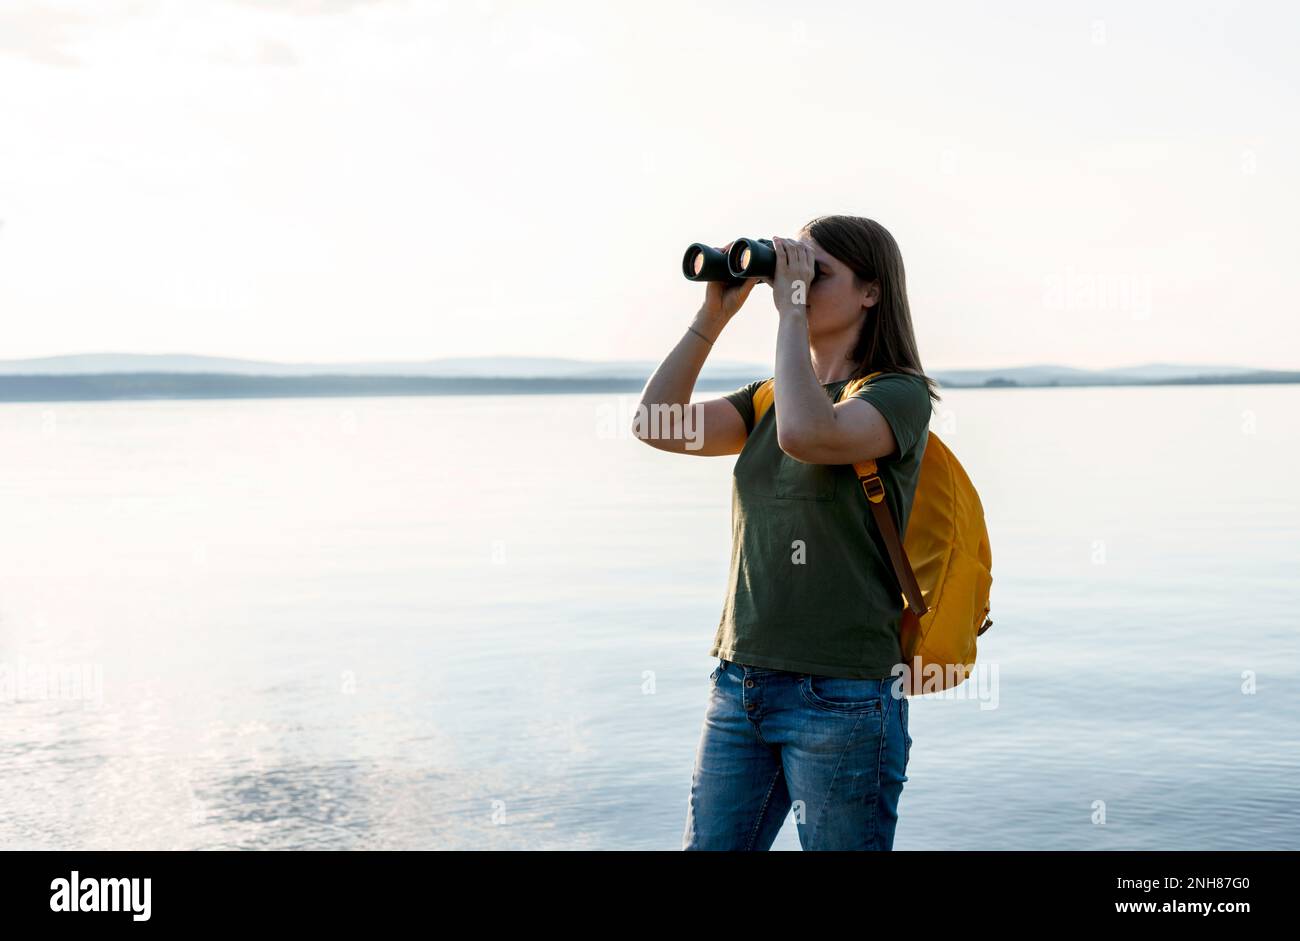 Junge Frau mit gelbem Rucksack, die durch ein Fernglas Vögel am See oder Fluss ansieht Vogelbeobachtung, Zoologie, Ökologie Forschung in der Natur, Beobachtung o Stockfoto